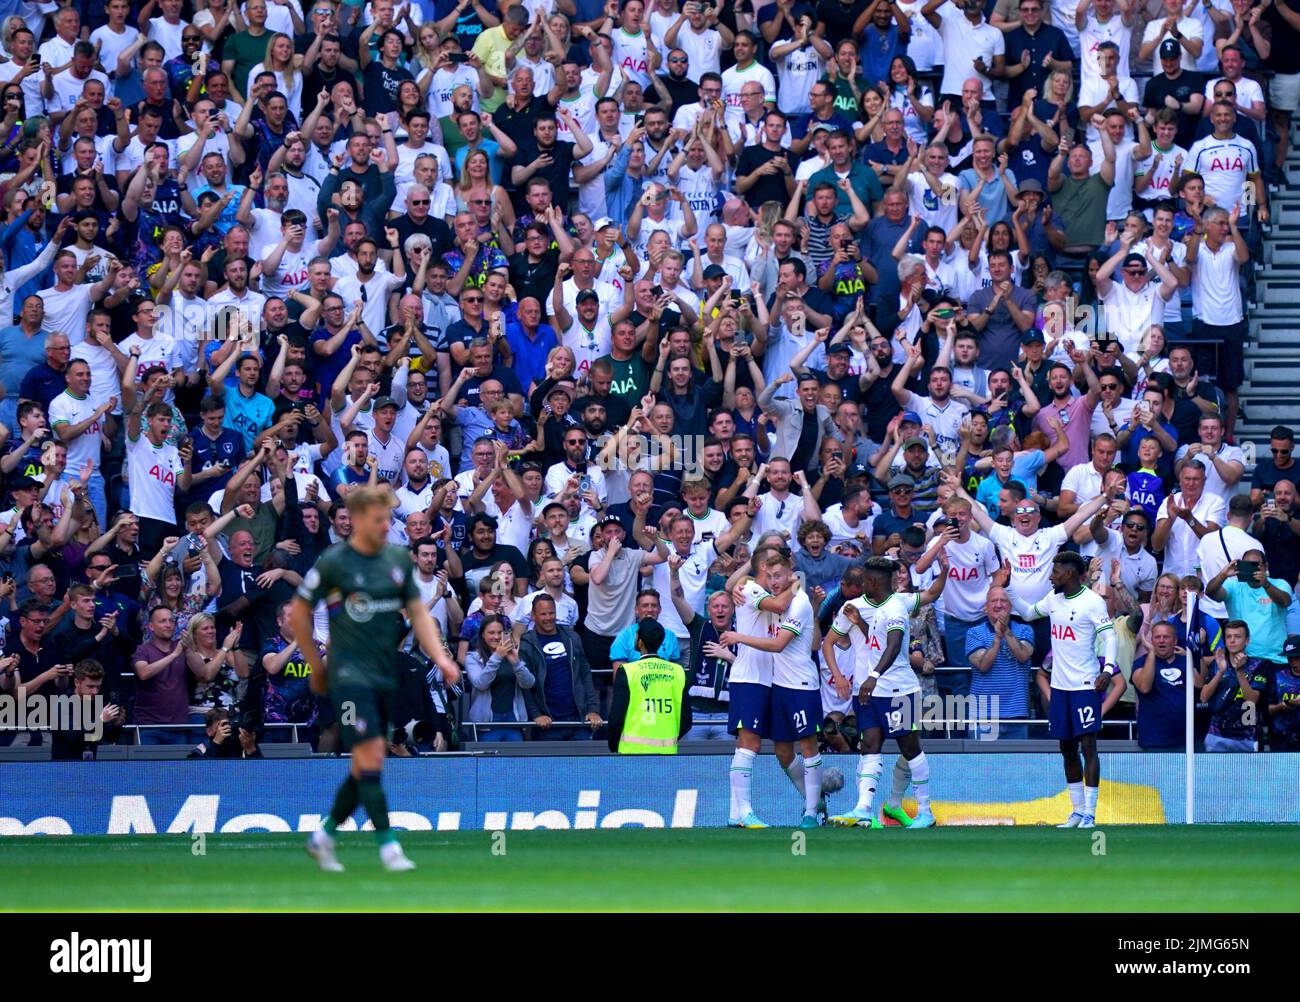 Dejan Kulusevski, de Tottenham Hotspur, celebra con sus compañeros de equipo después de marcar el cuarto gol de su equipo durante el partido de la Premier League en el Tottenham Hotspur Stadium, Londres. Fecha de la foto: Sábado 6 de agosto de 2022. Foto de stock